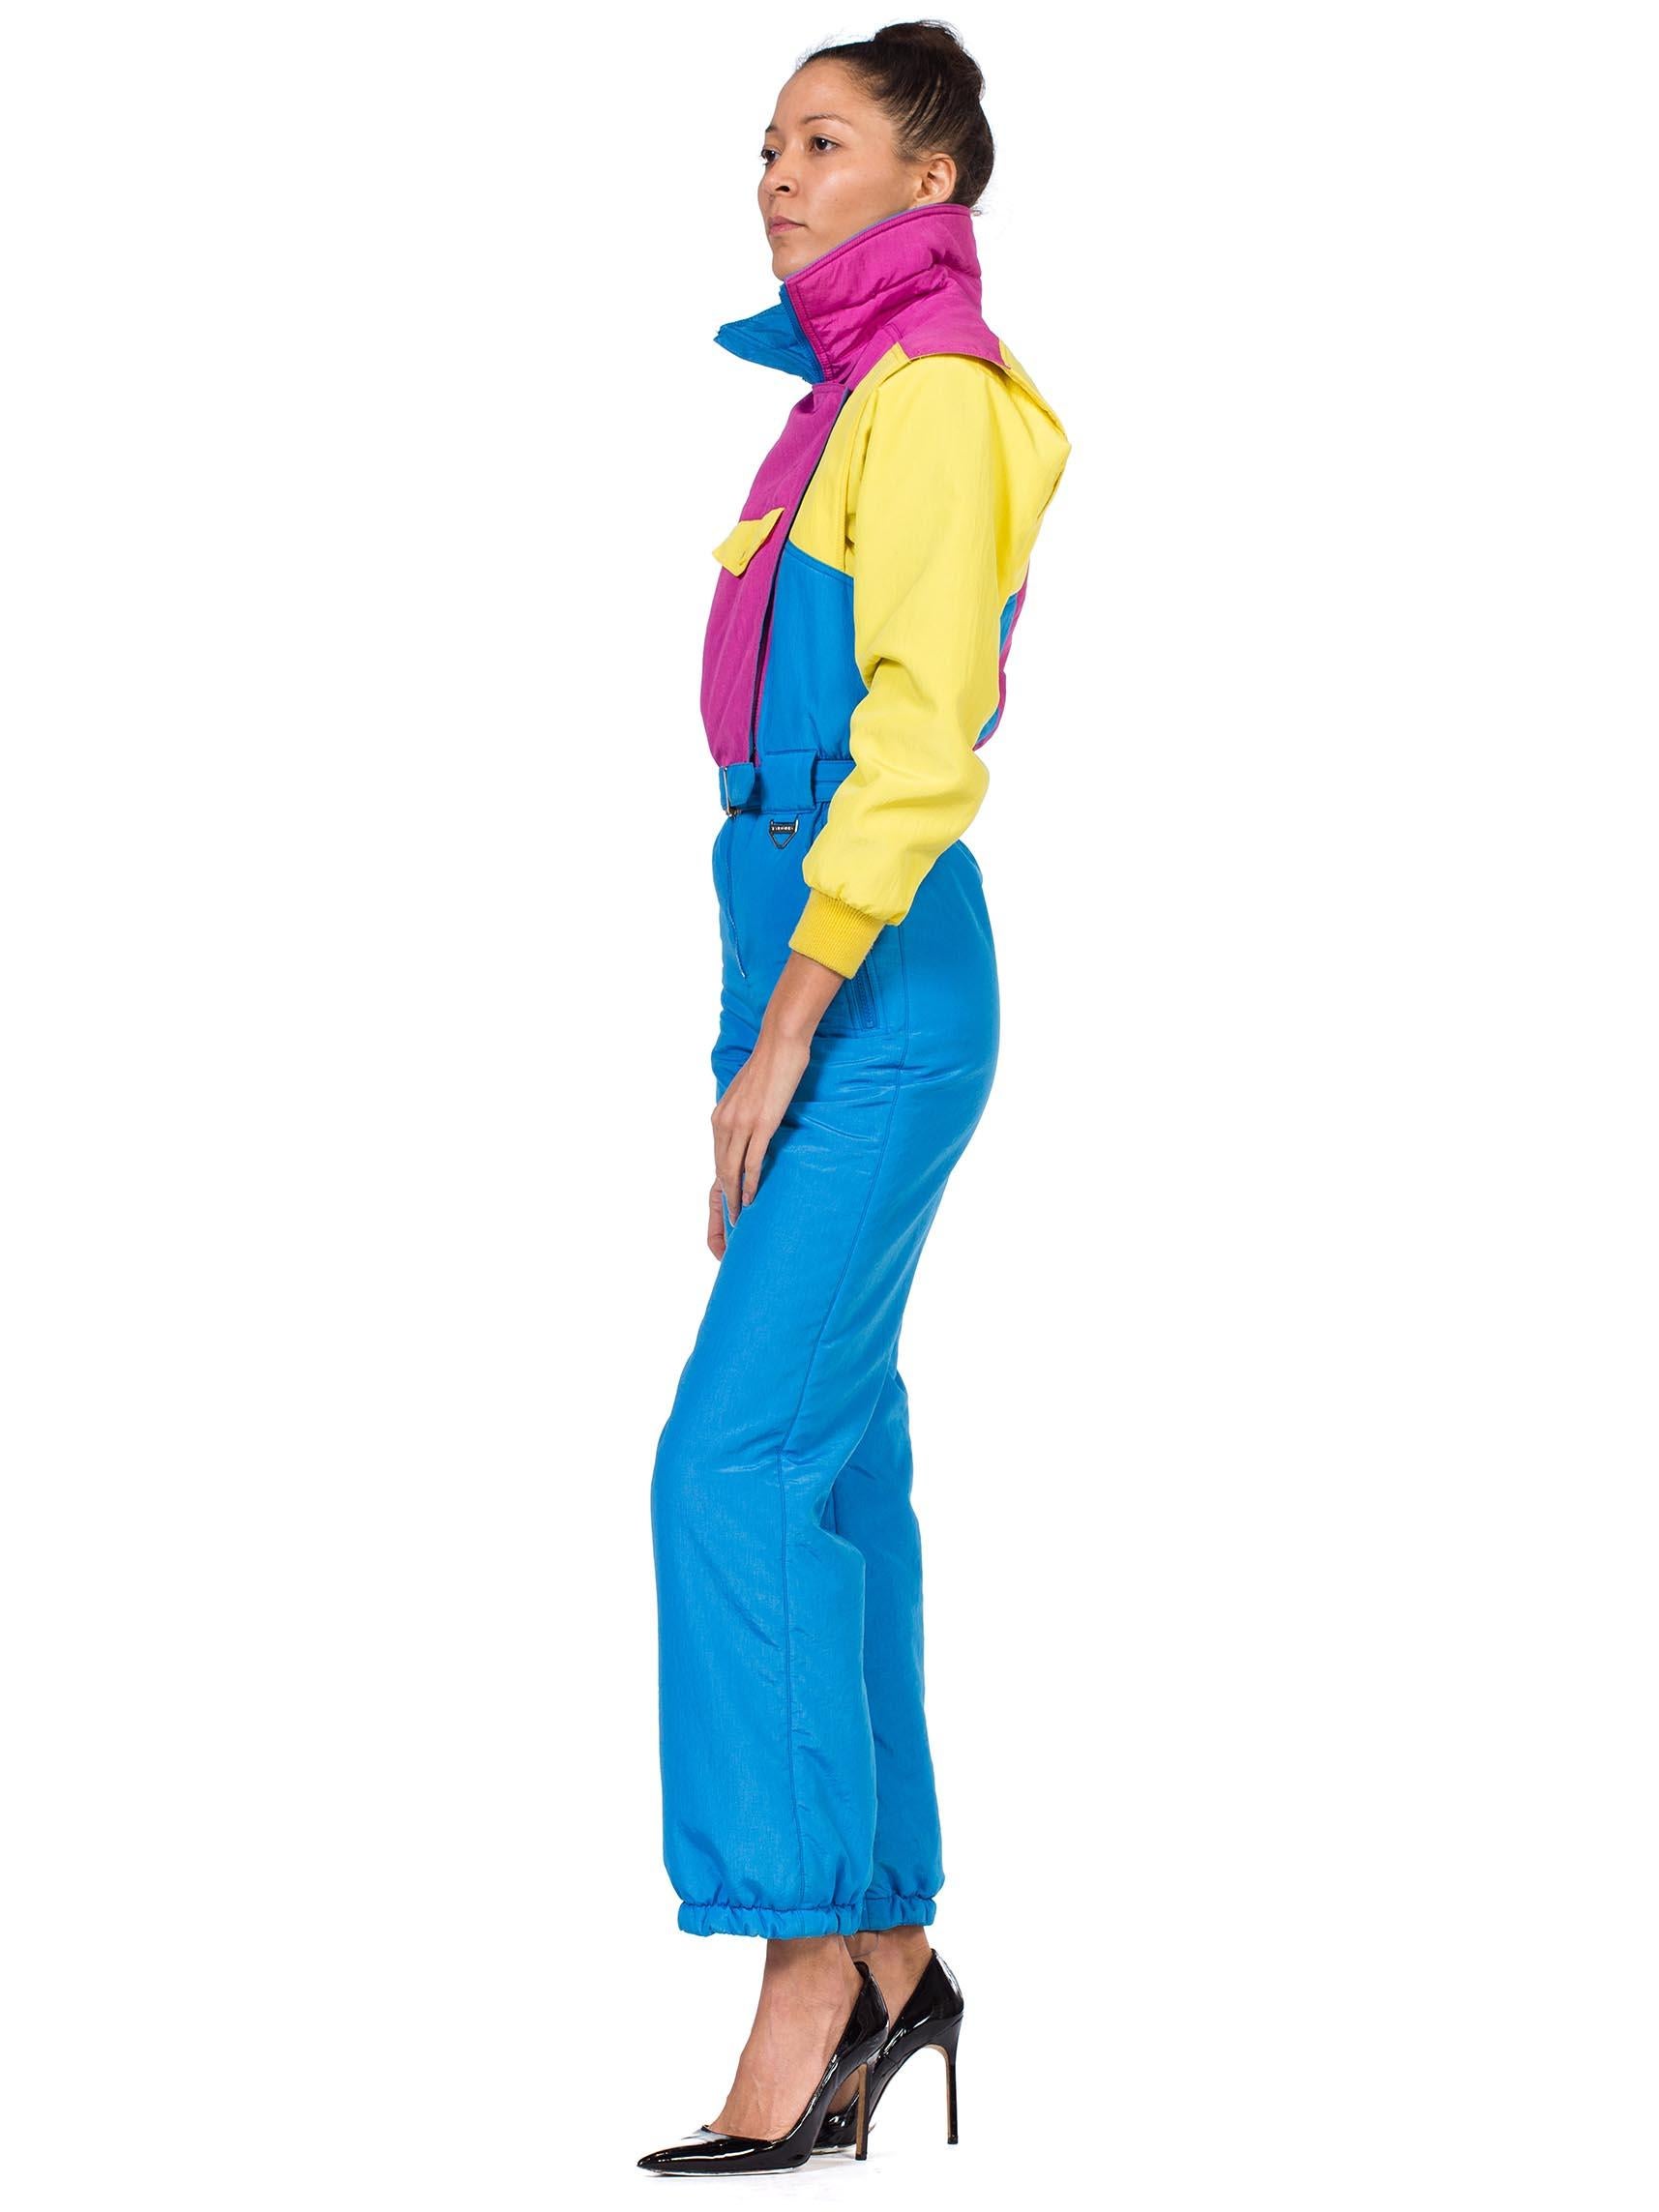 Bleu Combinaison-jupe en nylon rose fluo, turquoise et jaune, années 1980 en vente